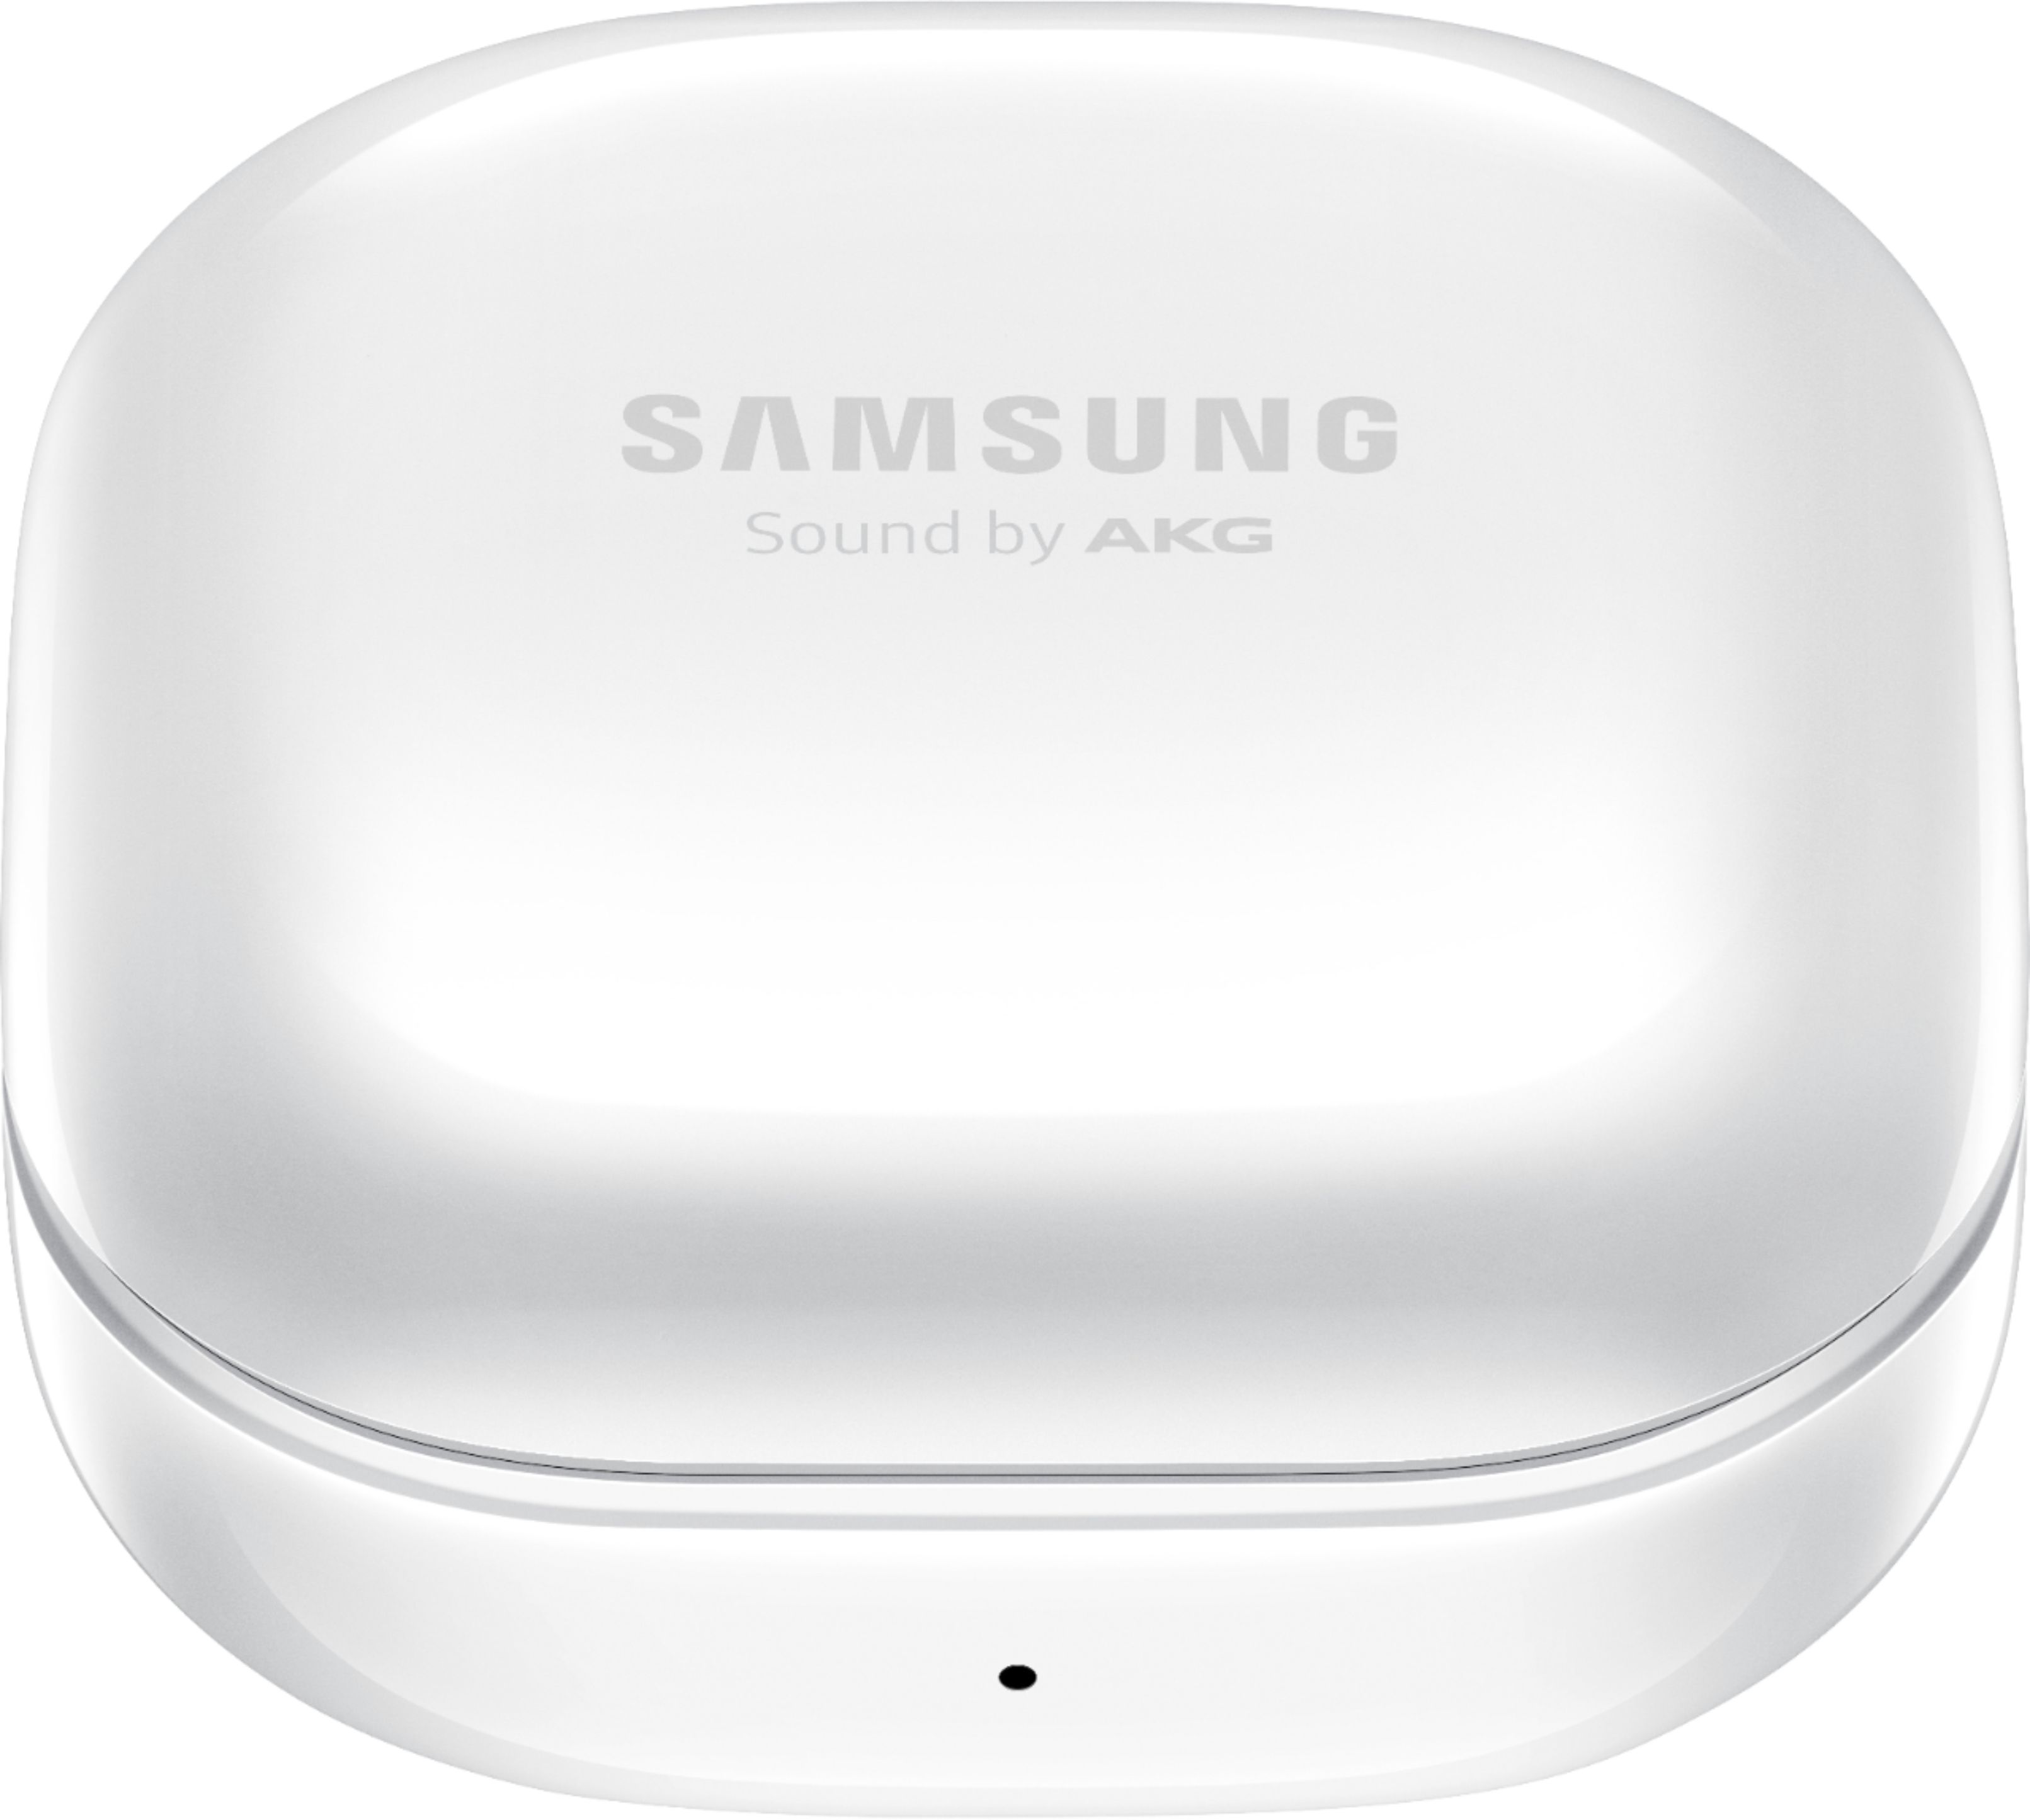 Samsung Geek Squad Certified Refurbished Galaxy Buds Pro True Wireless  Noise Canceling Earbud Headphones Phantom Silver GSRF SM-R190NZSAXAR - Best  Buy